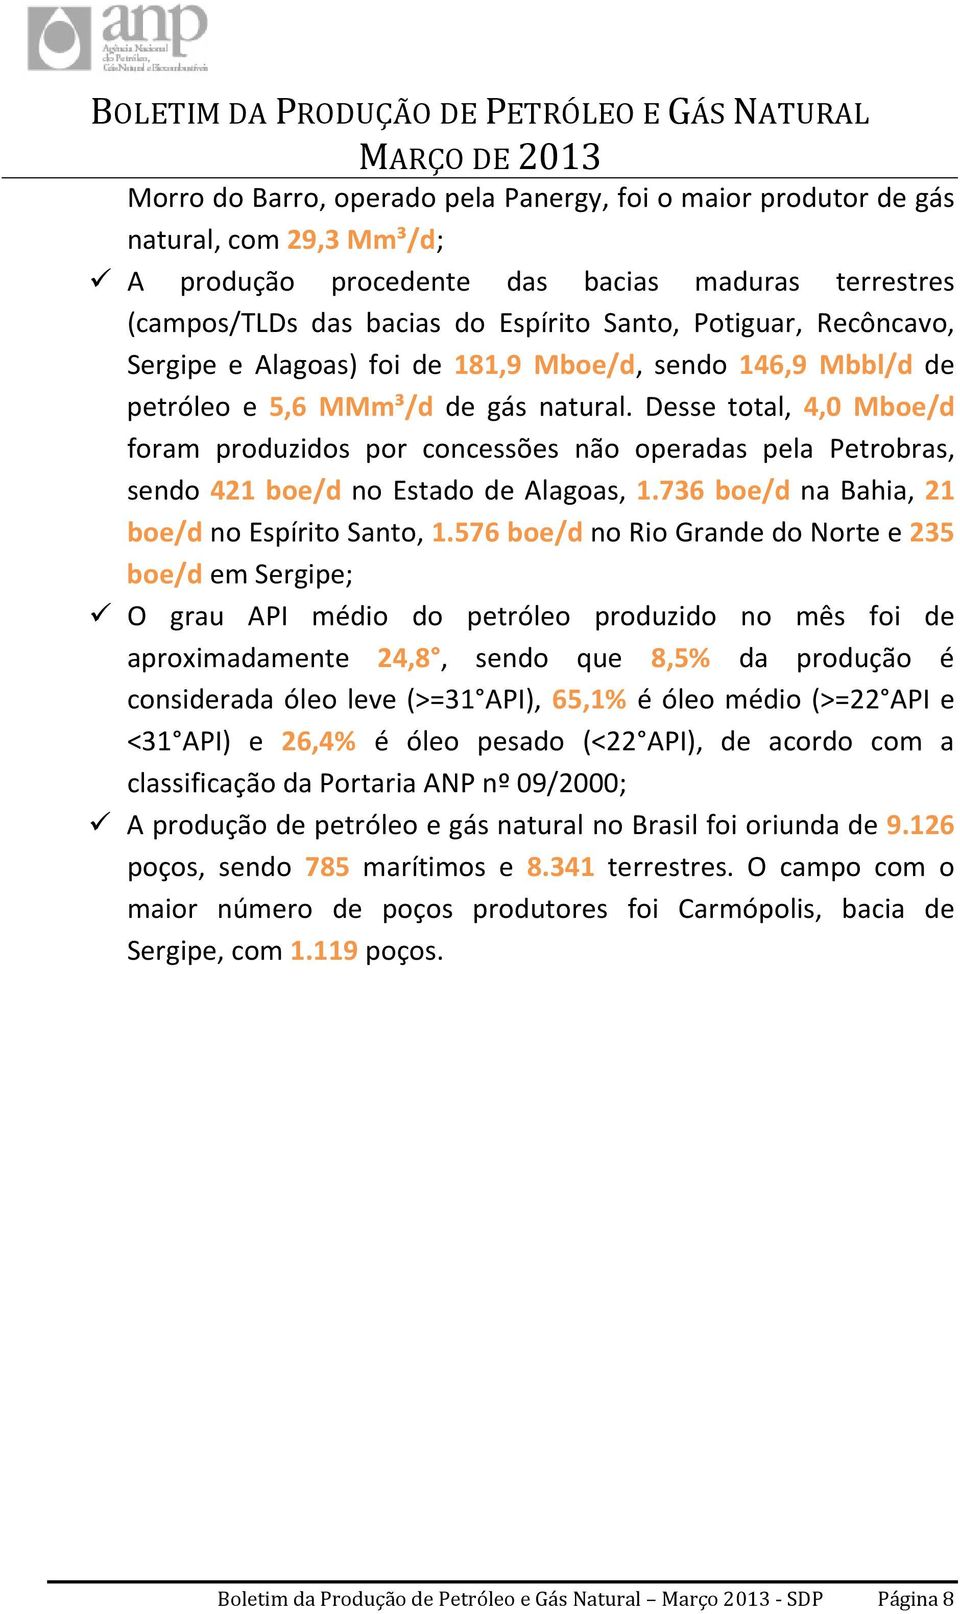 Desse total, 4,0 Mboe/d foram produzidos por concessões não operadas pela Petrobras, sendo 421 boe/d no Estado de Alagoas, 1.736 boe/d na Bahia, 21 boe/d no Espírito Santo, 1.